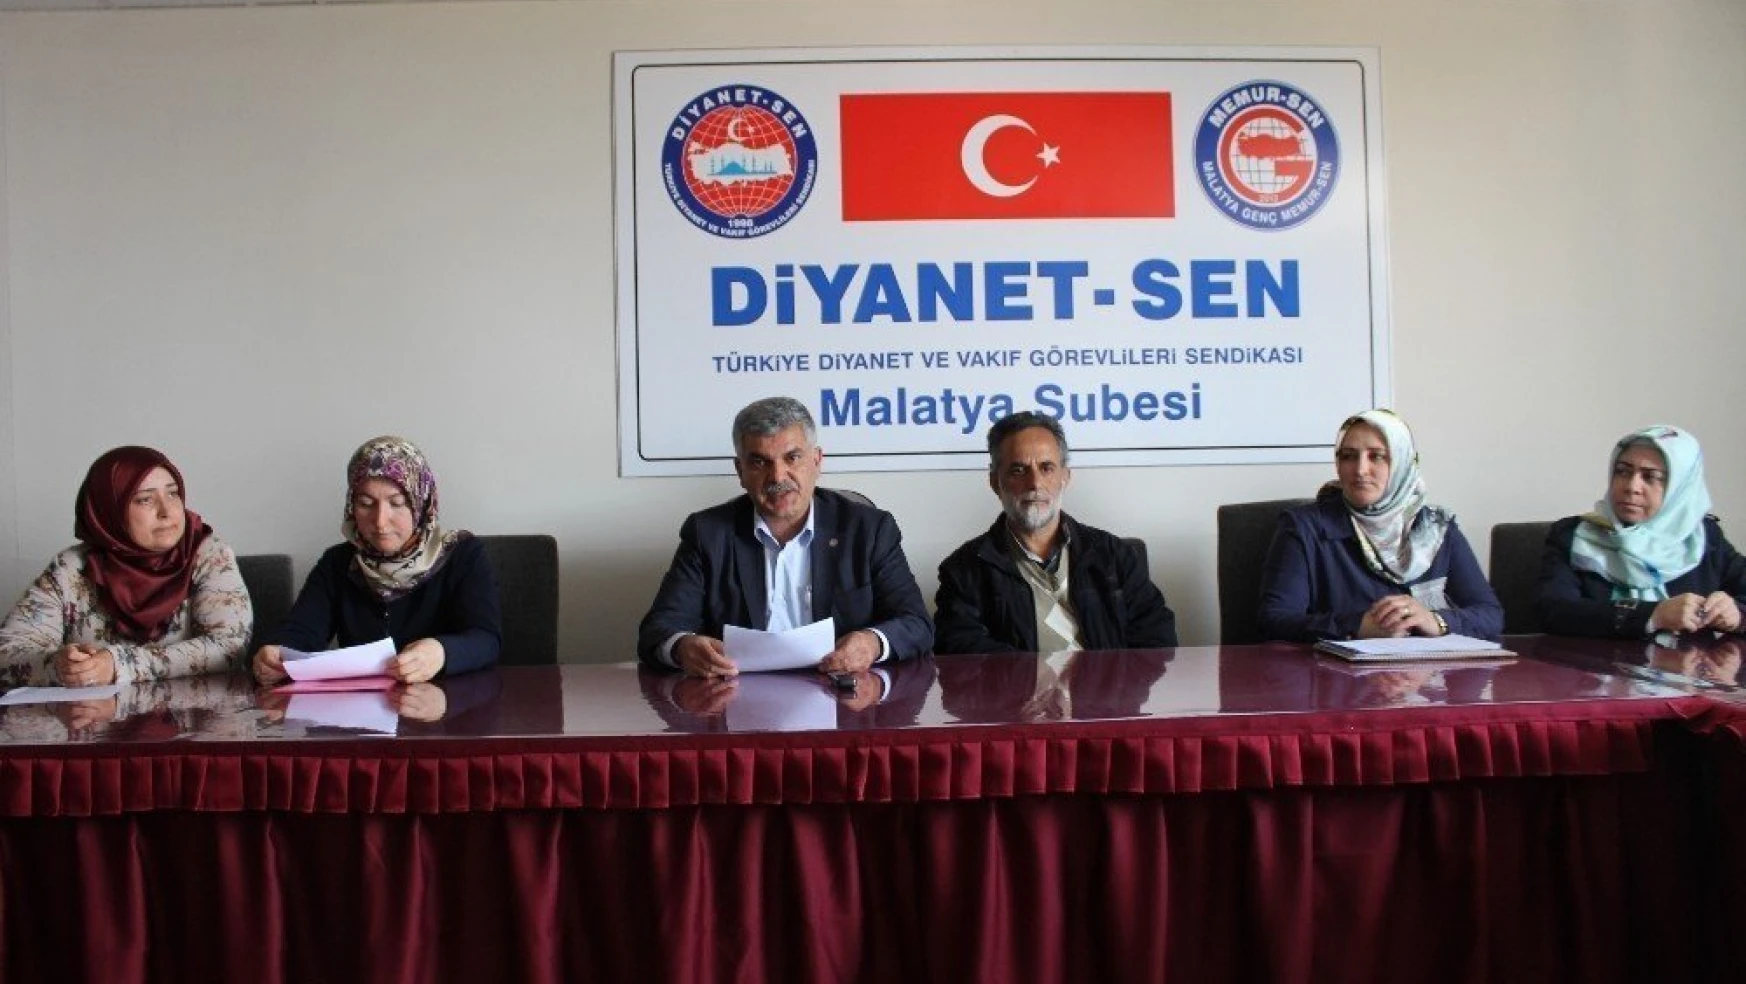 Diyanet-Sen'den 28 Şubat açıklaması